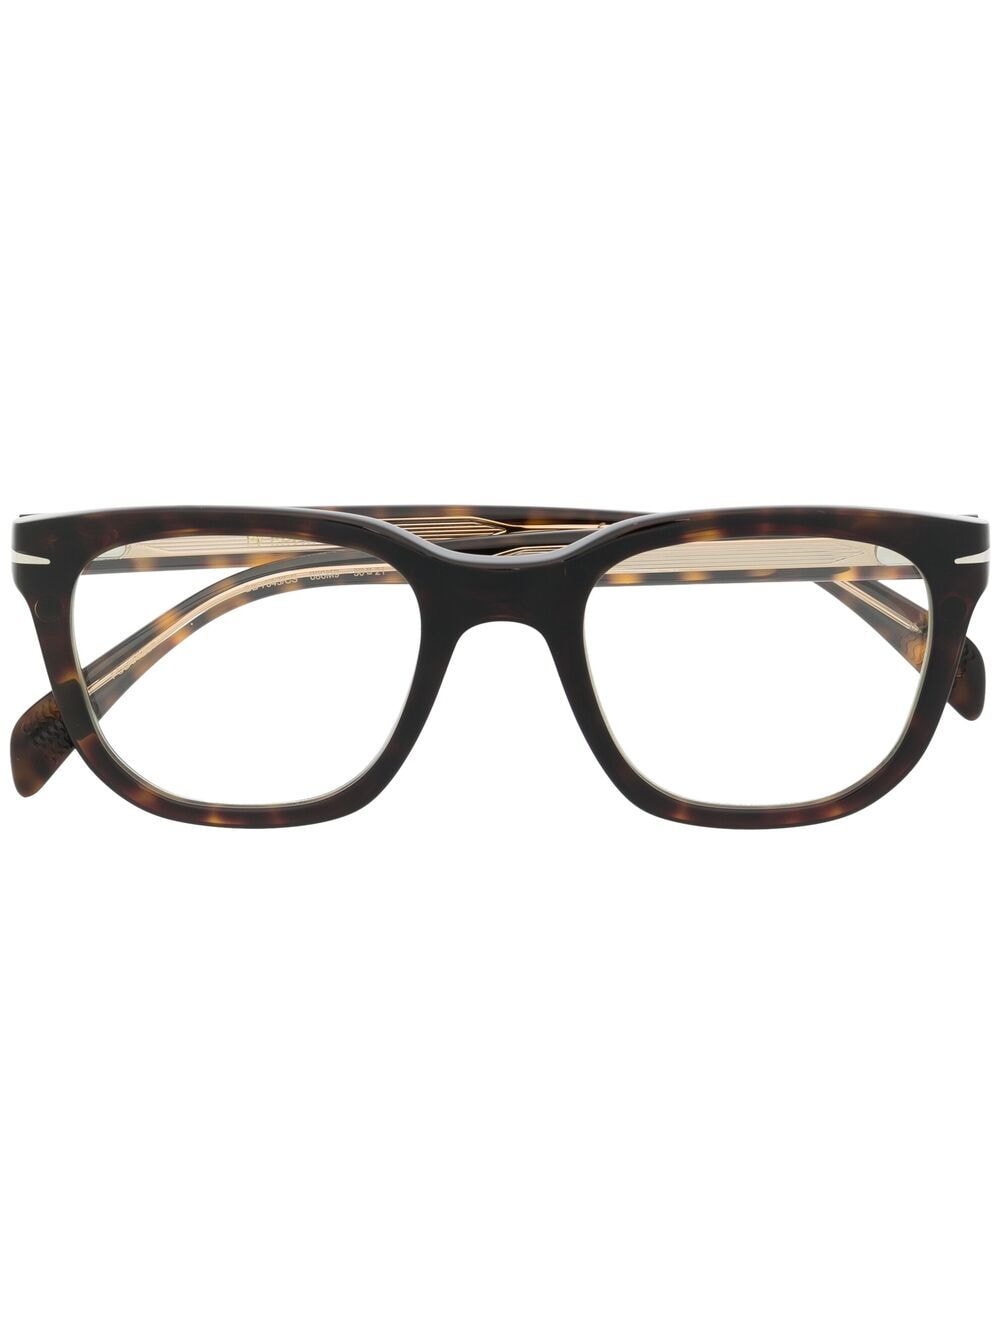 Eyewear By David Beckham Tortoiseshell Clip-on Lens Glasses In Brown